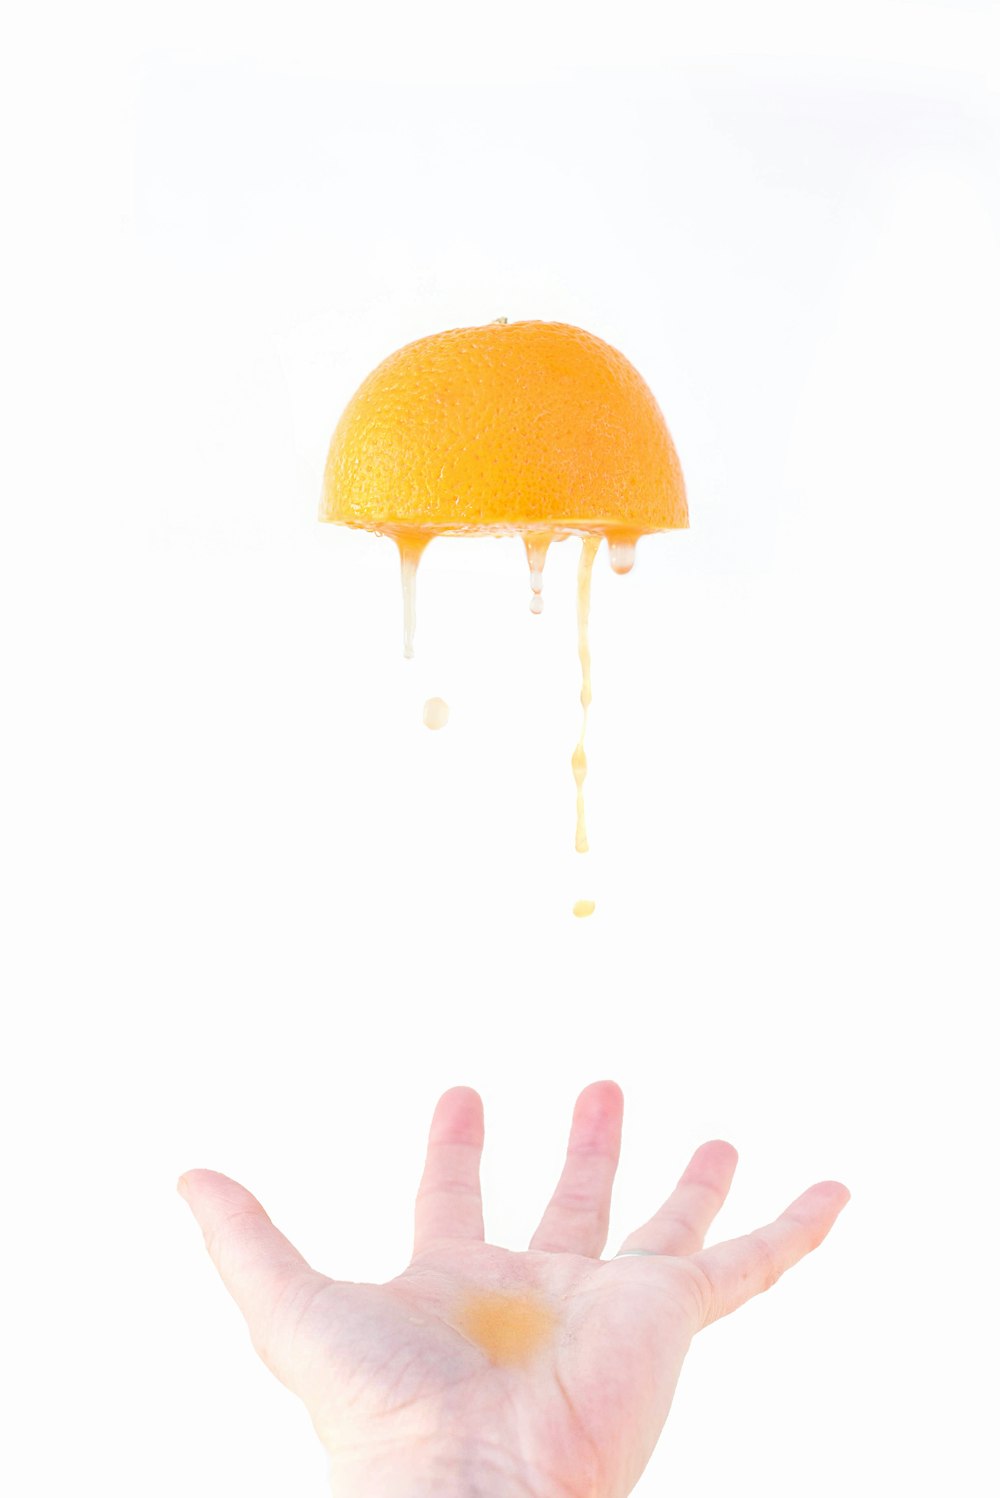 水滴の入ったオレンジ色の実を持つ人